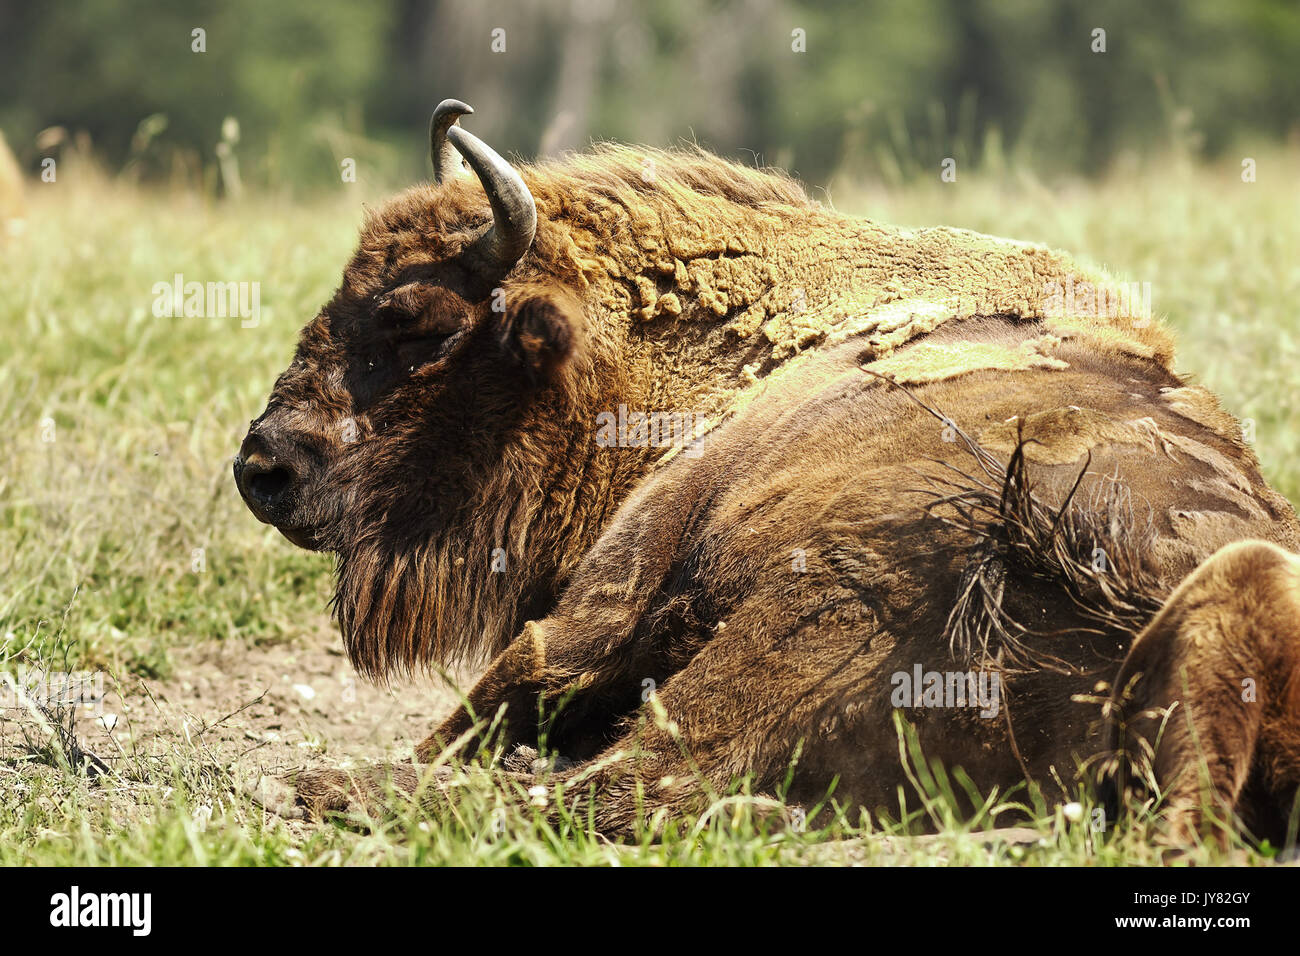 Europeo di grandi dimensioni ( bison Bison bonasus ) appoggiata sul prato Foto Stock